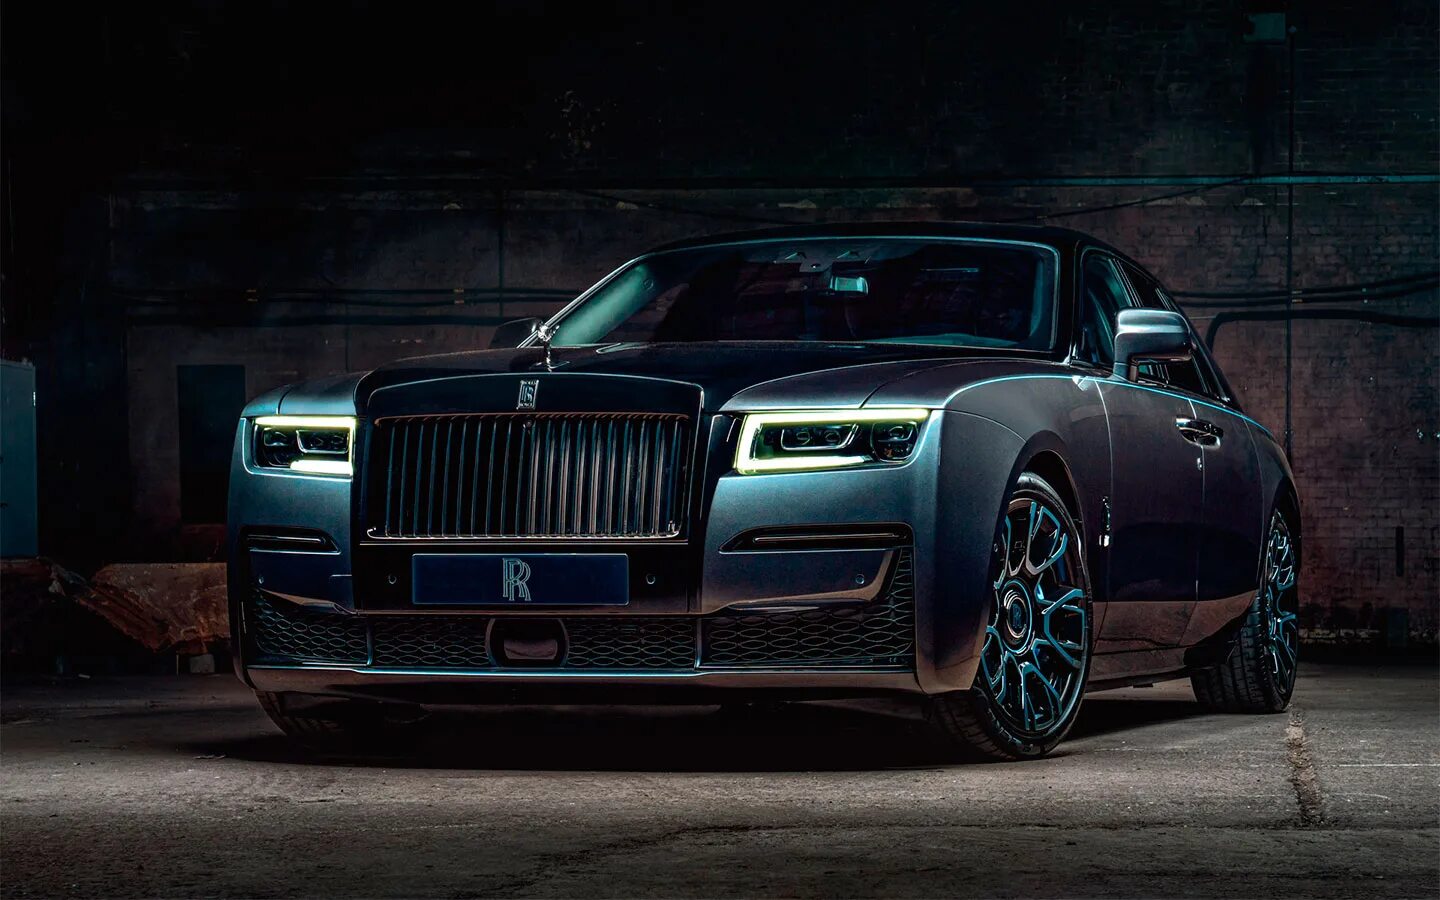 Rr spectre. Rolls Royce Ghost 2022. Rolls Royce Ghost Black badge 2022. Роллс Ройс Ghost Black badge. Rolls Royce Ghost Mansory 2022.